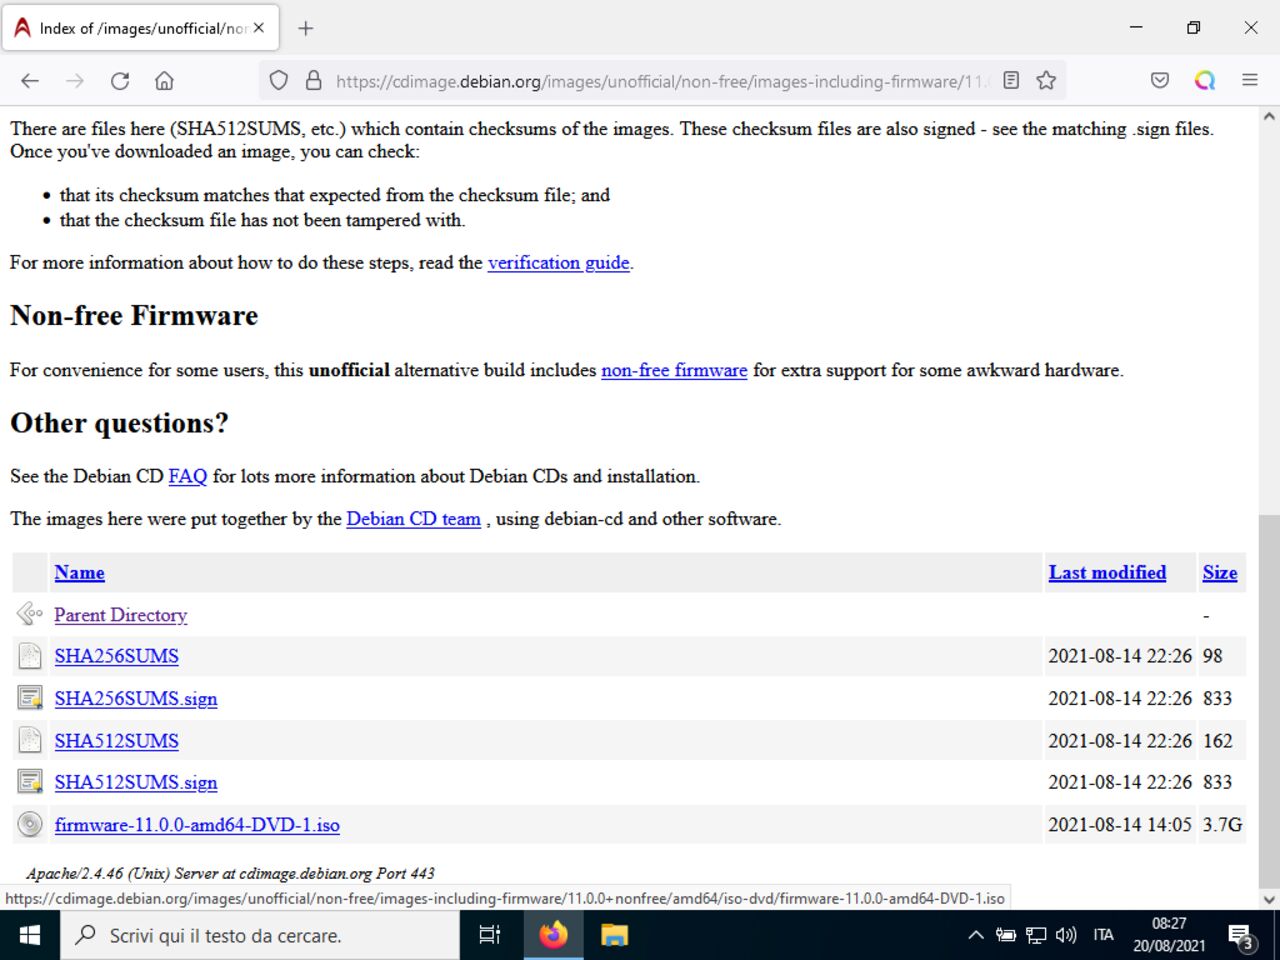 Il mio primo laptop Linux - Download la immagine ISO Debian firmware non-free CD / DVD selezionata